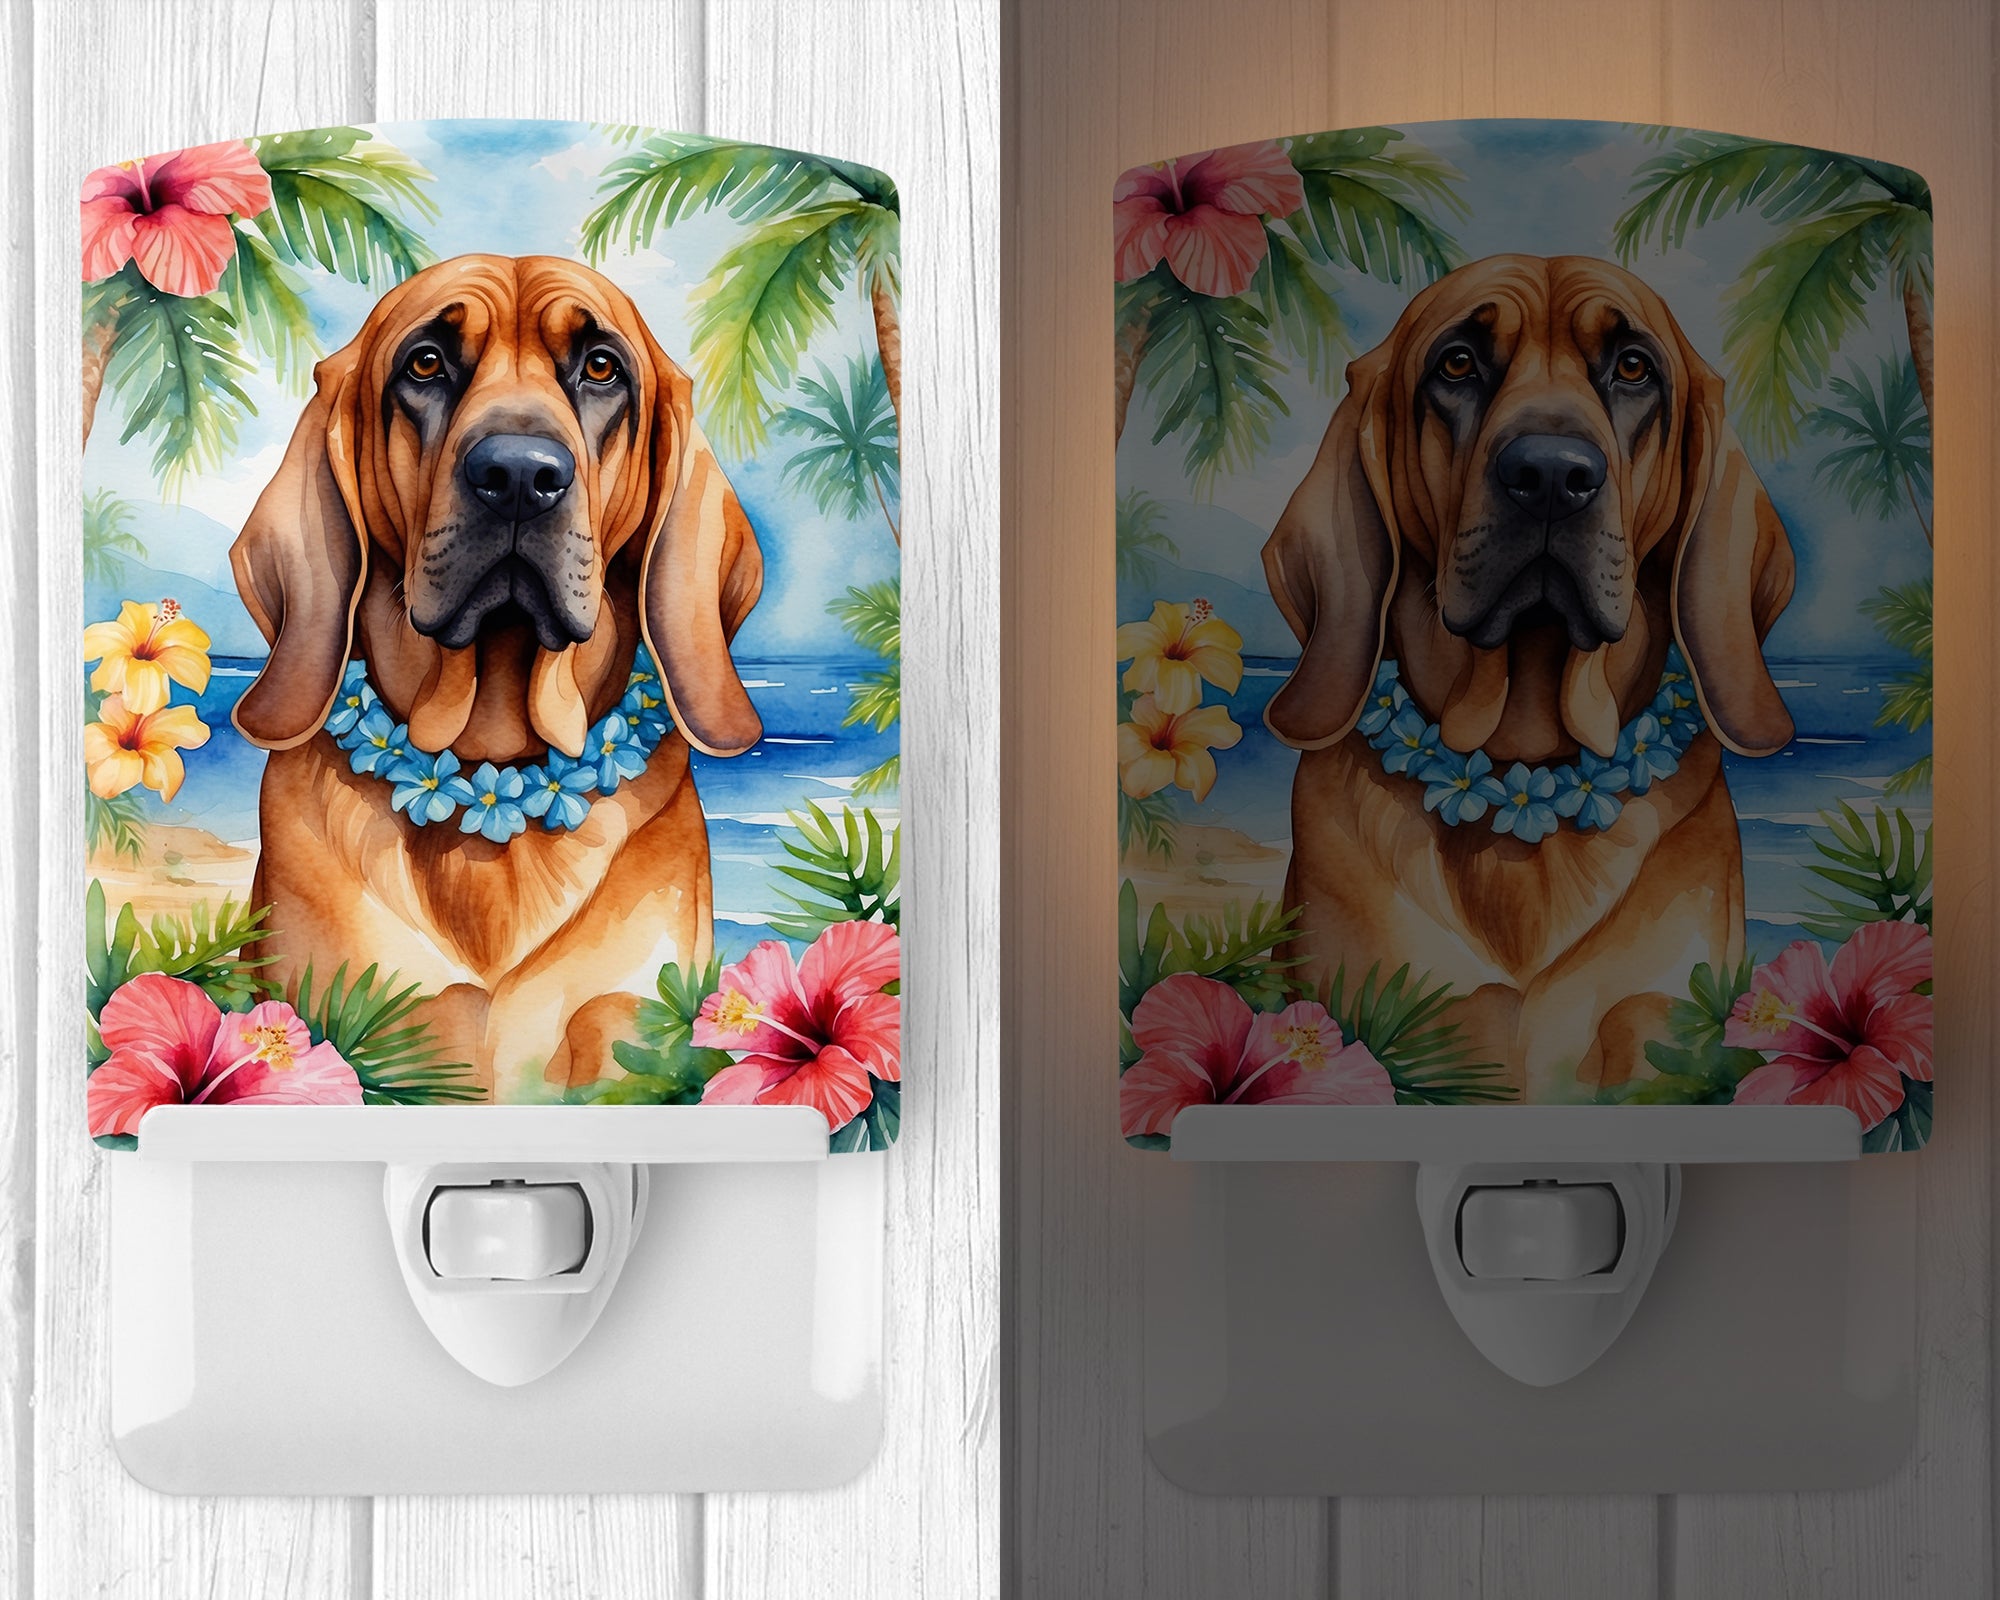 Buy this Bloodhound Luau Ceramic Night Light